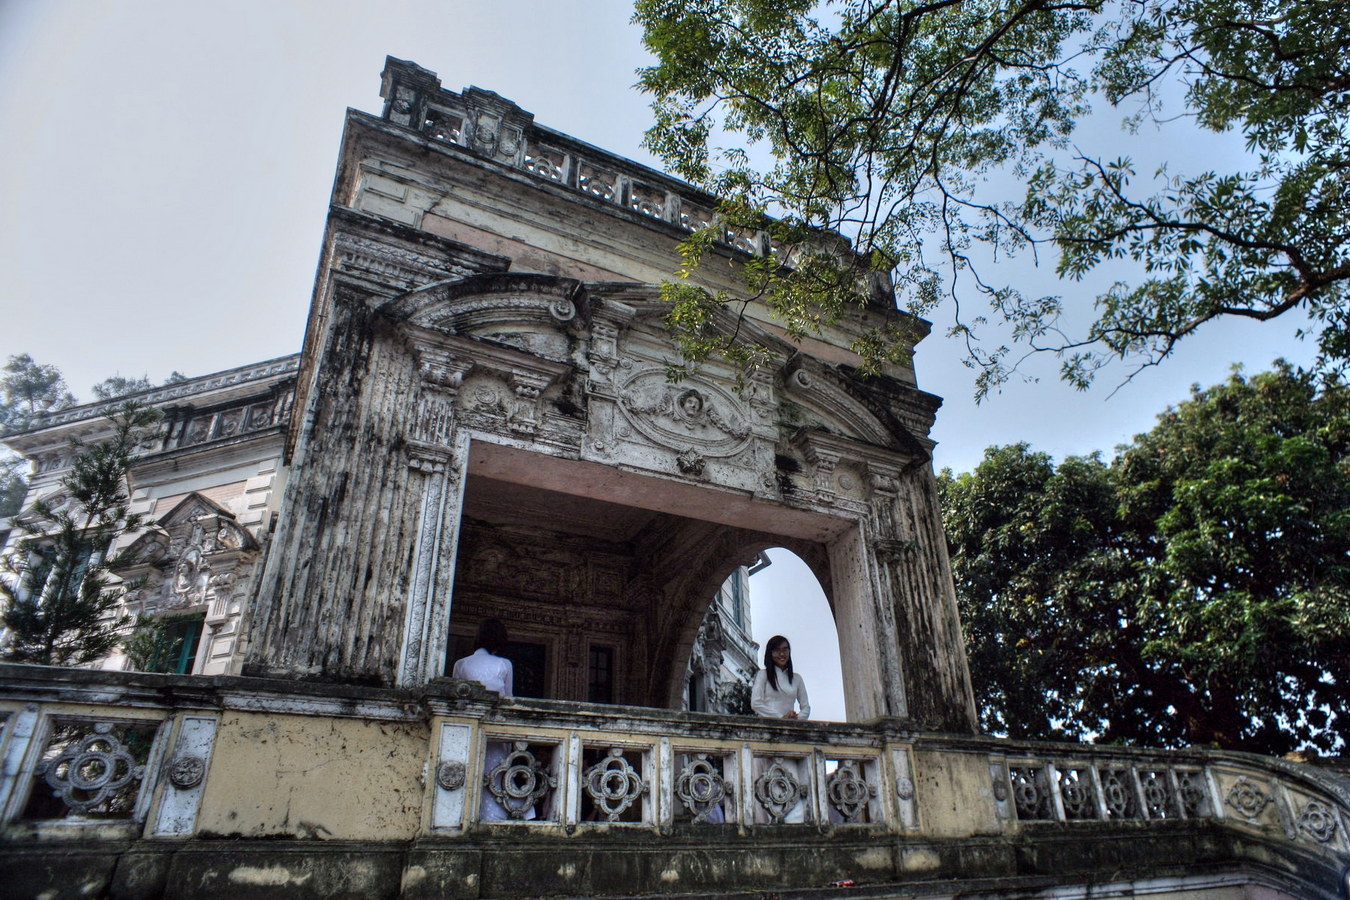 Chùm ảnh: Dinh thự cổ tuyệt đẹp trong ngôi trường trăm tuổi ở Hà Nội